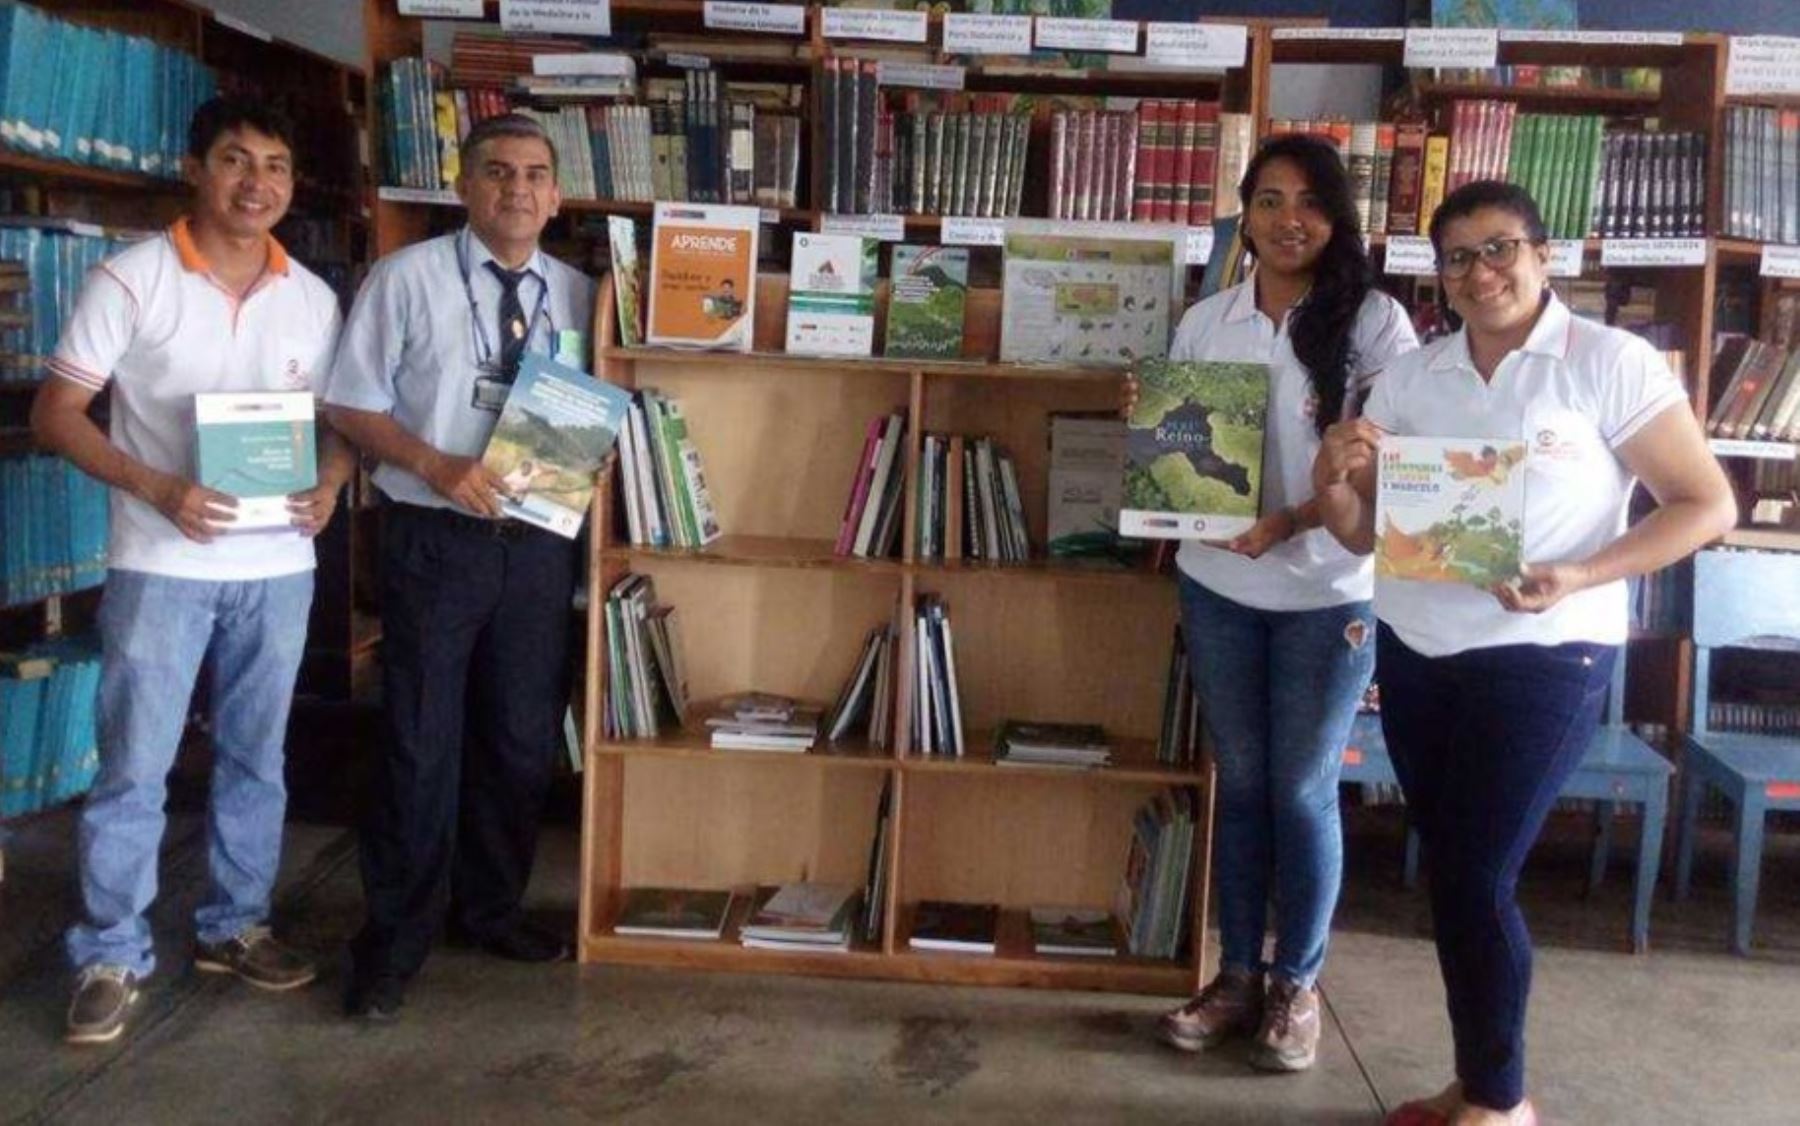 El Ministerio del Ambiente, a través de la Autoridad Regional Ambiental San Martín, implementó la segunda biblioteca virtual que ayudará a enriquecer el conocimiento de la población sobre la cultura e investigación ambiental en la región.